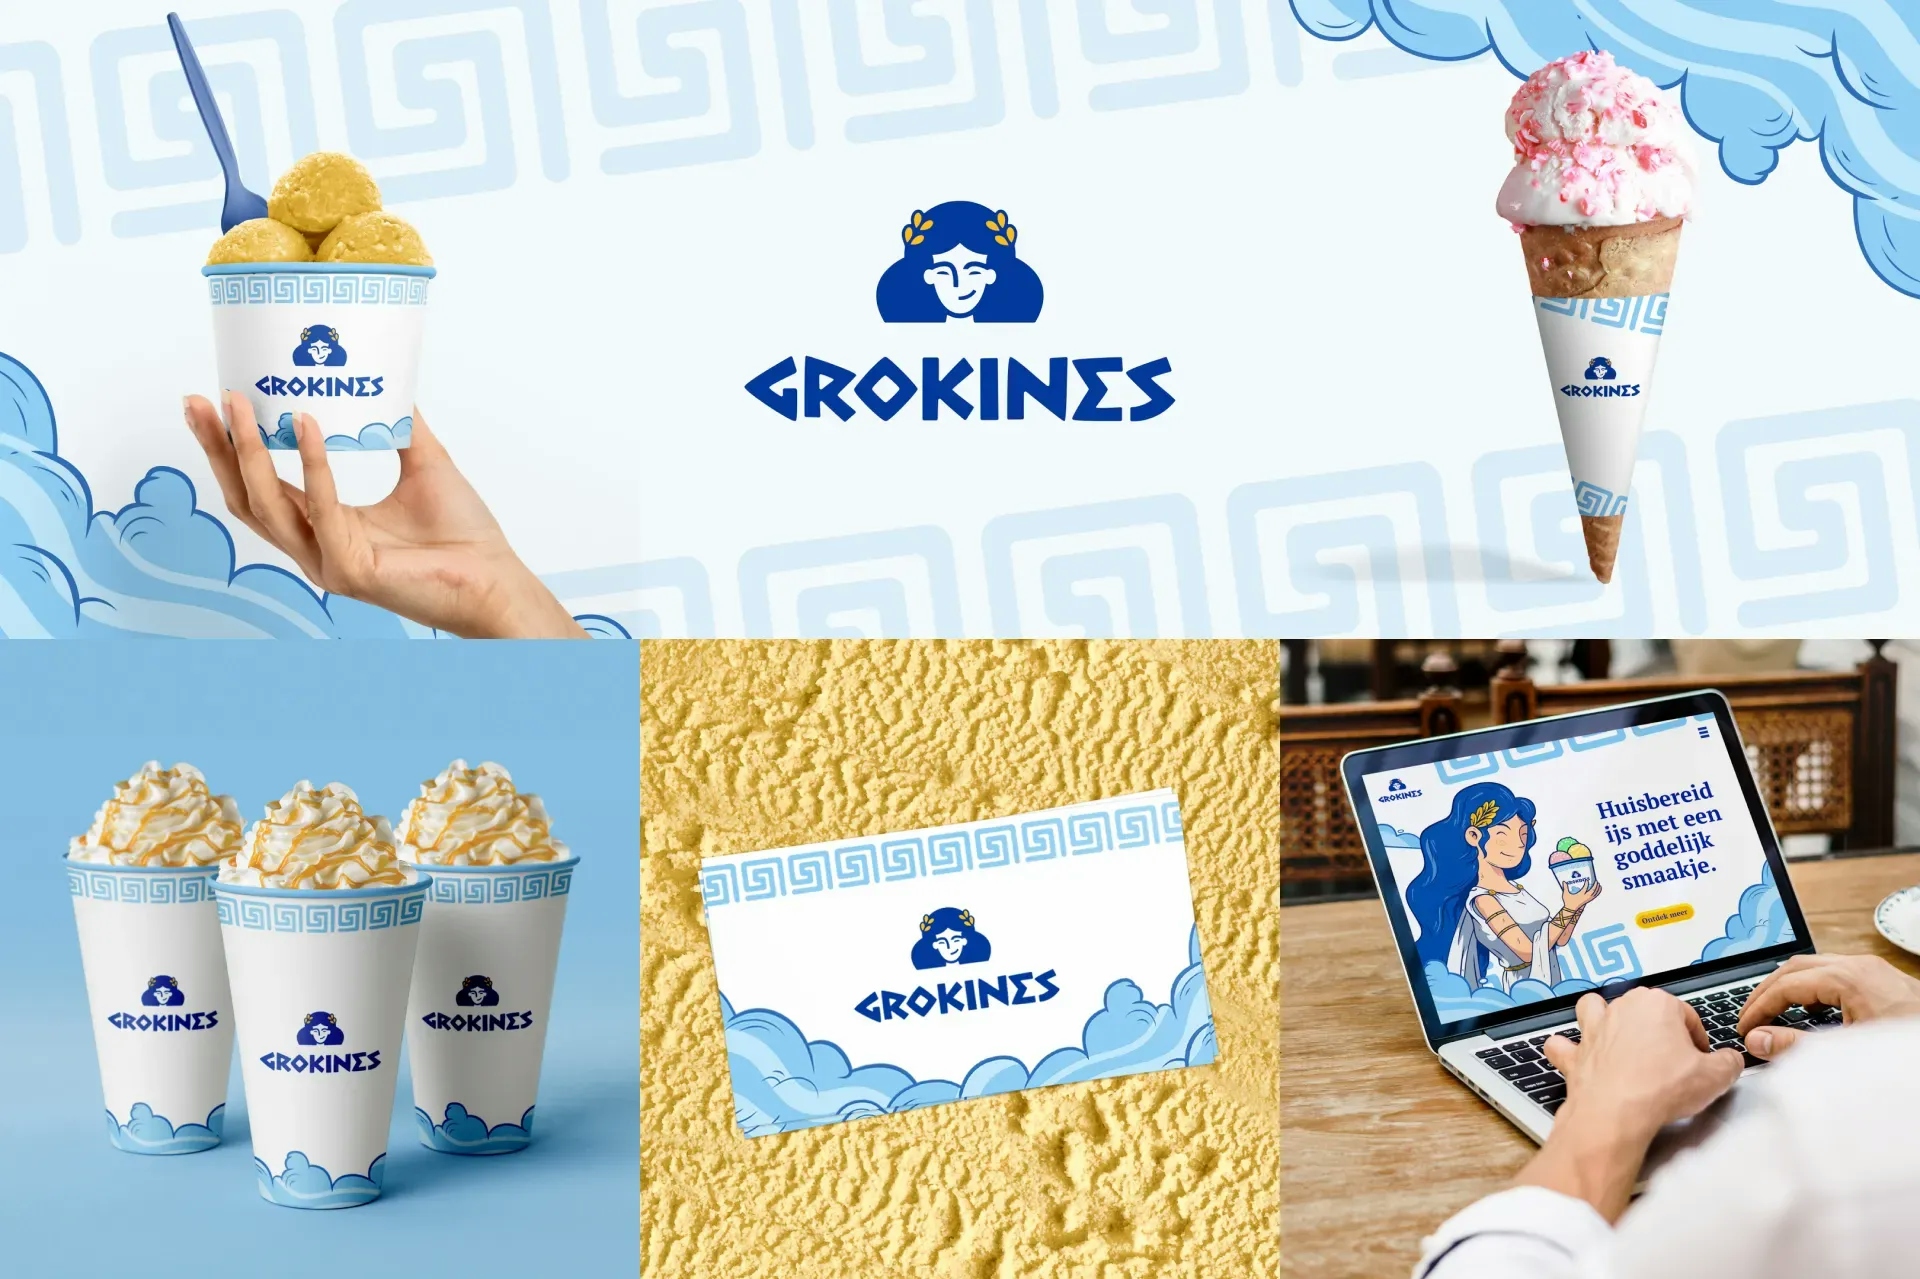 logo-huisstijl-website-grokines-1.webp